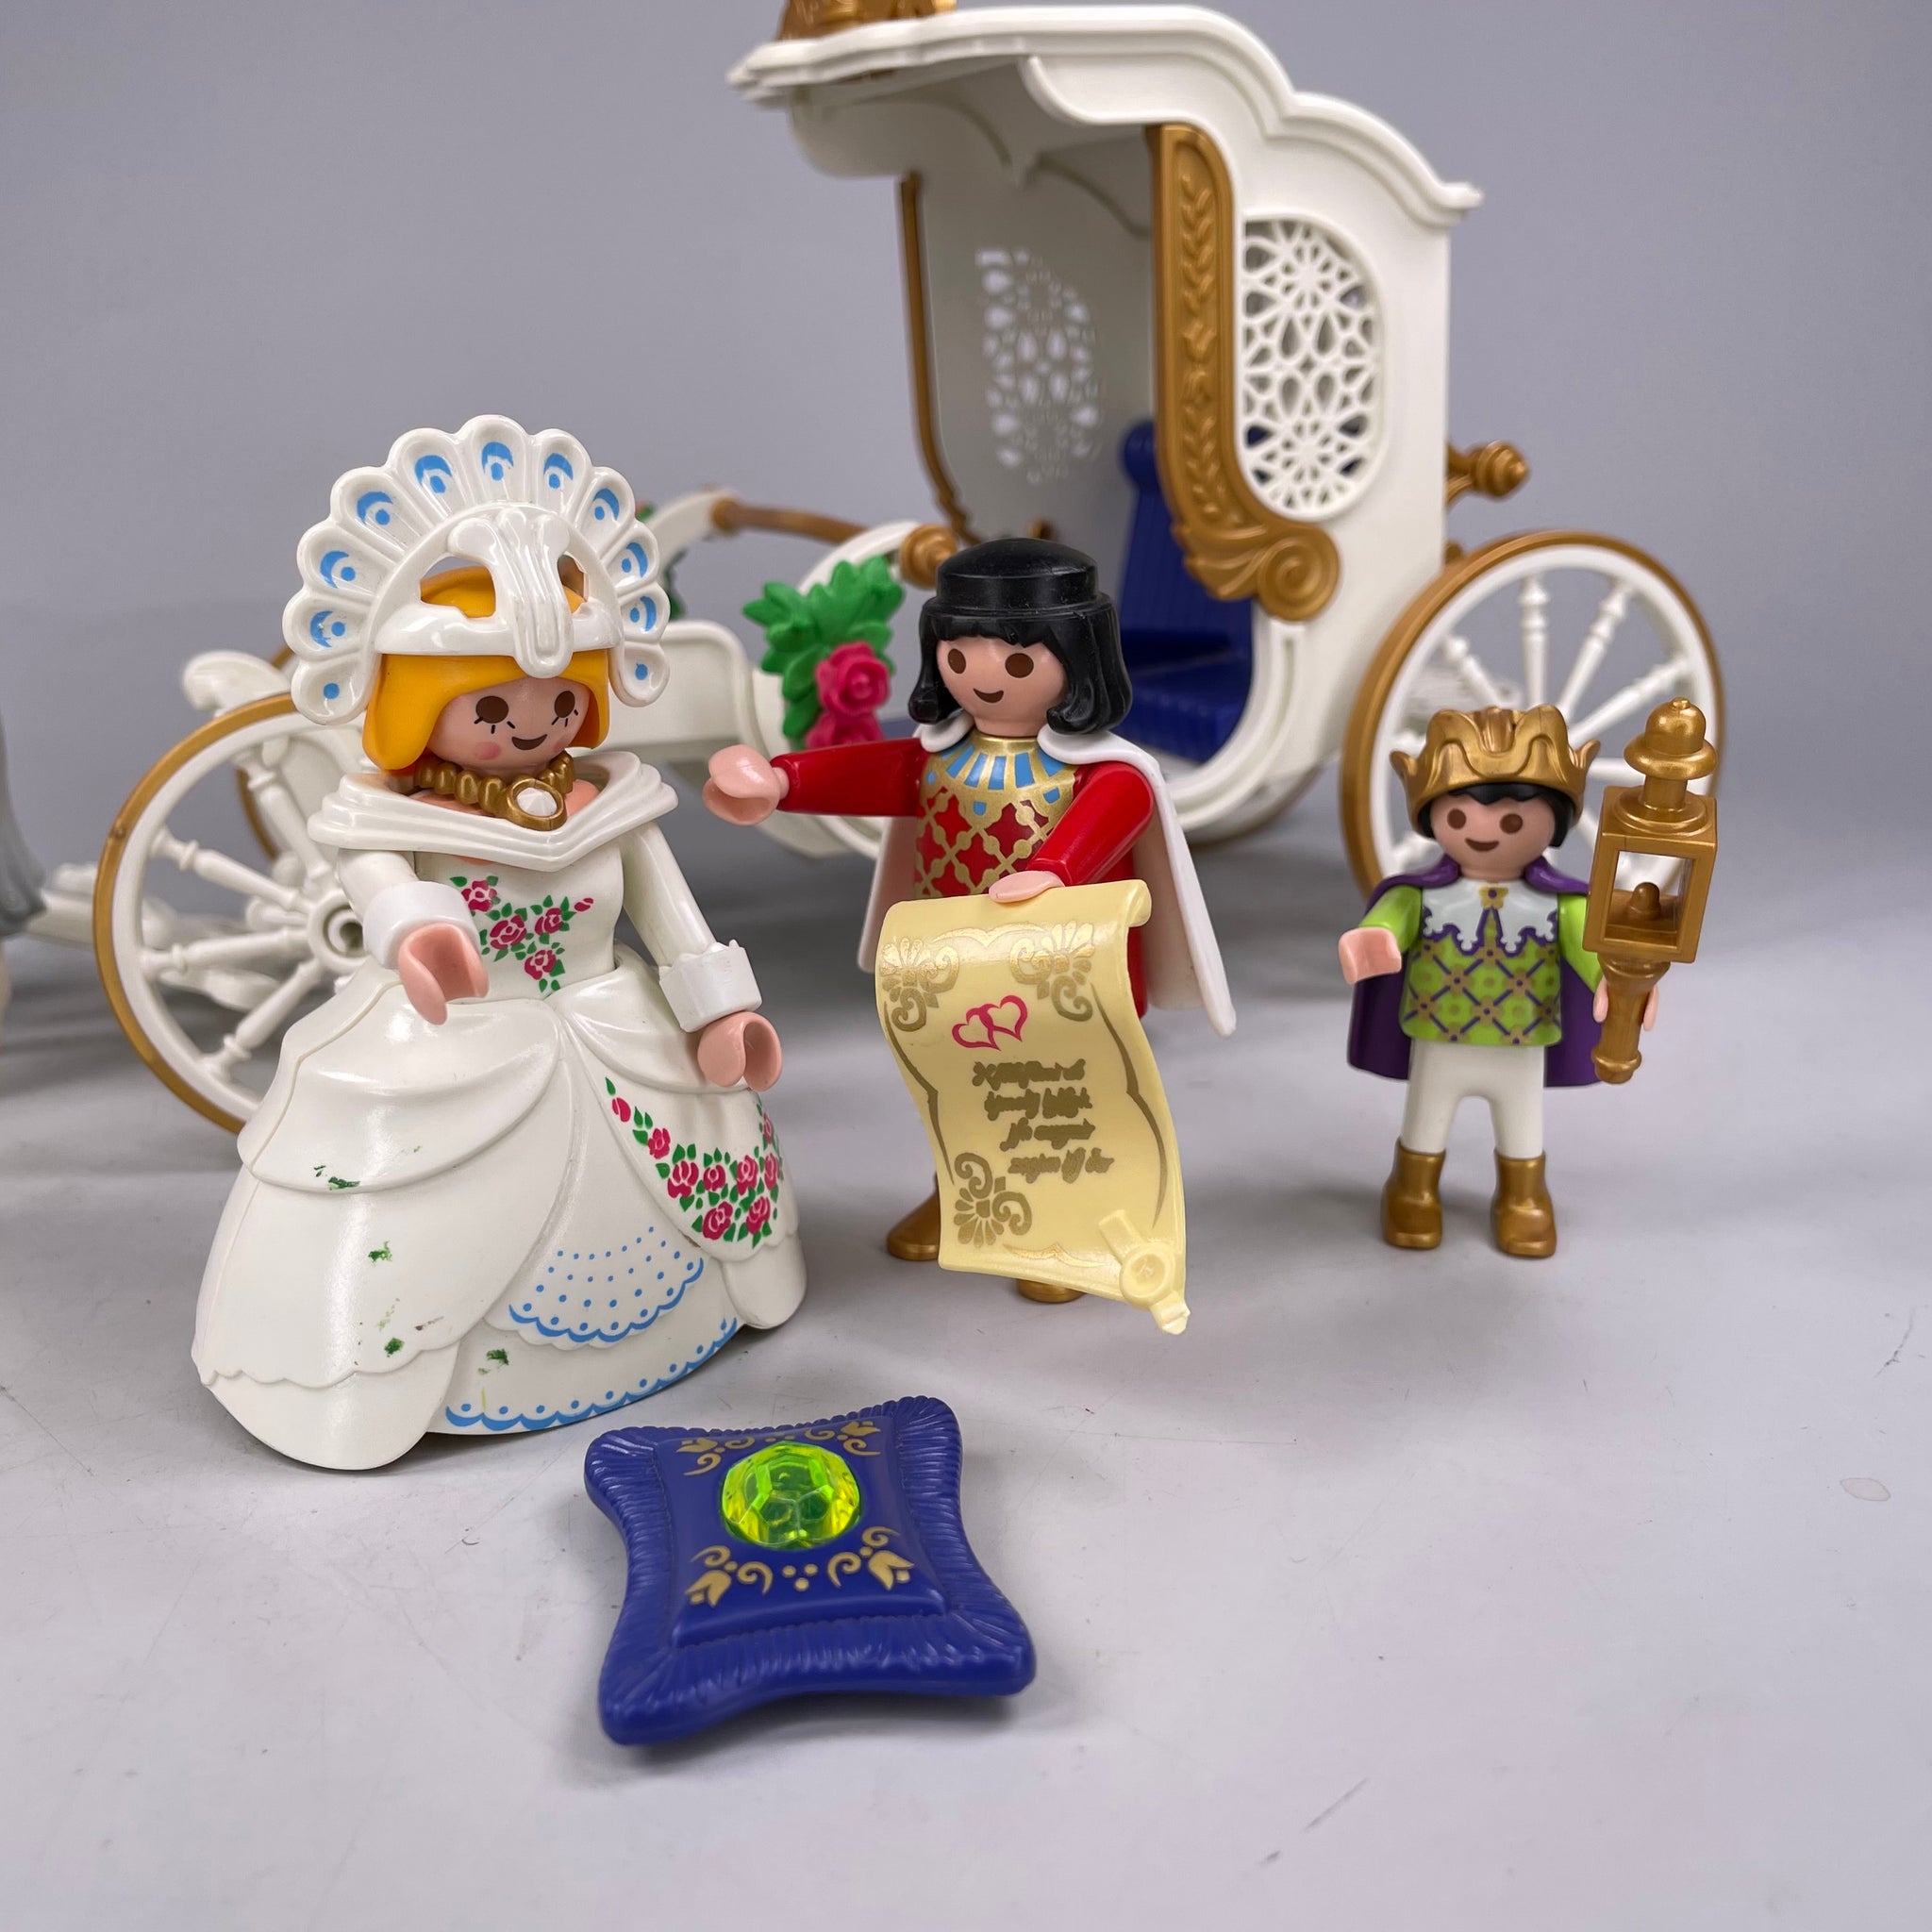 Playmobil Königliche Hochzeits-Kutsche, Pferde, Brautpaar - unvollständig